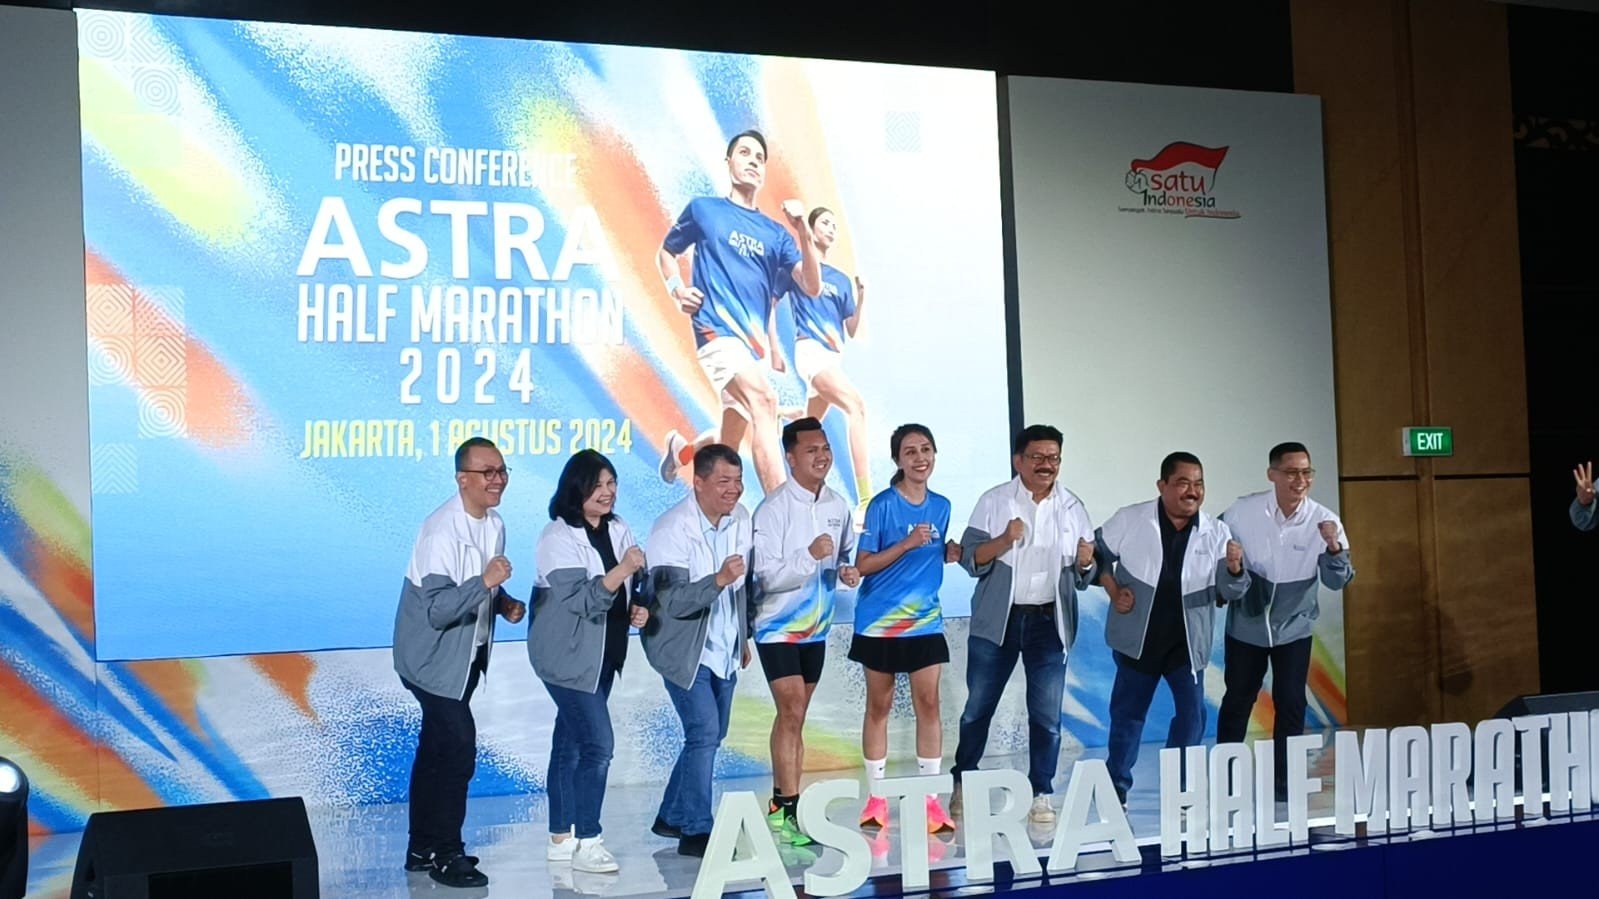 Astra Half Marathon 2024 Gelorakan Kampanye Gaya Hidup dan Lingkungan Sehat